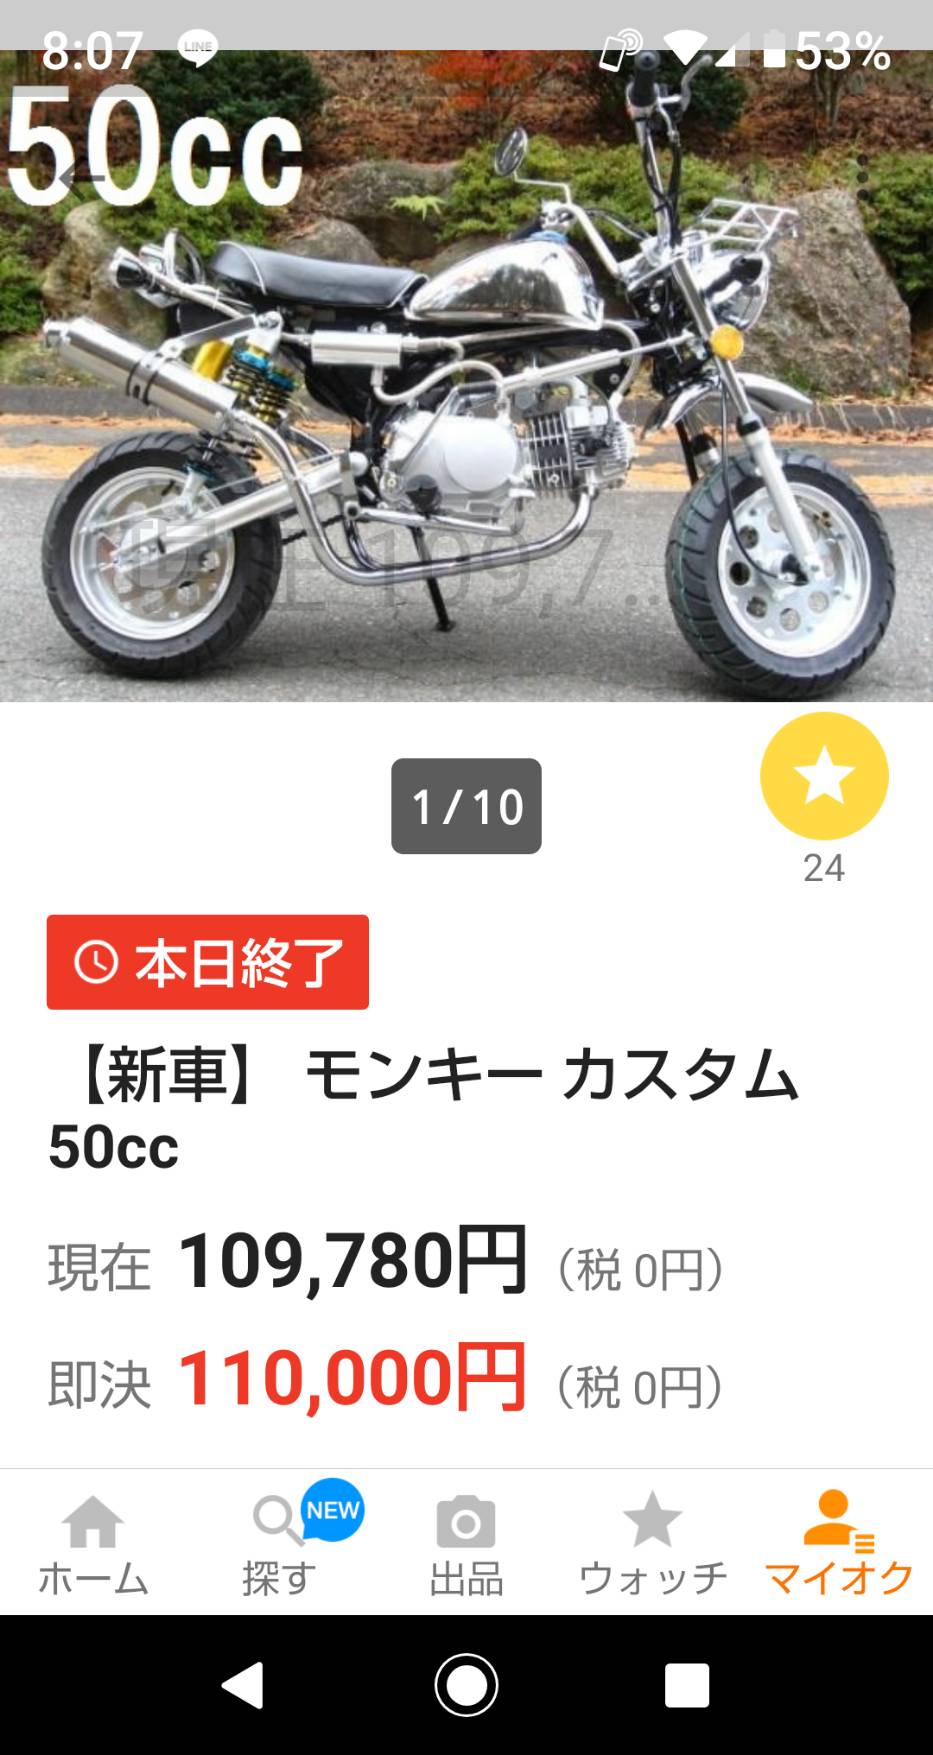 東京に住む姉たぶん57才が50ccのモンキー欲しいって言い出した